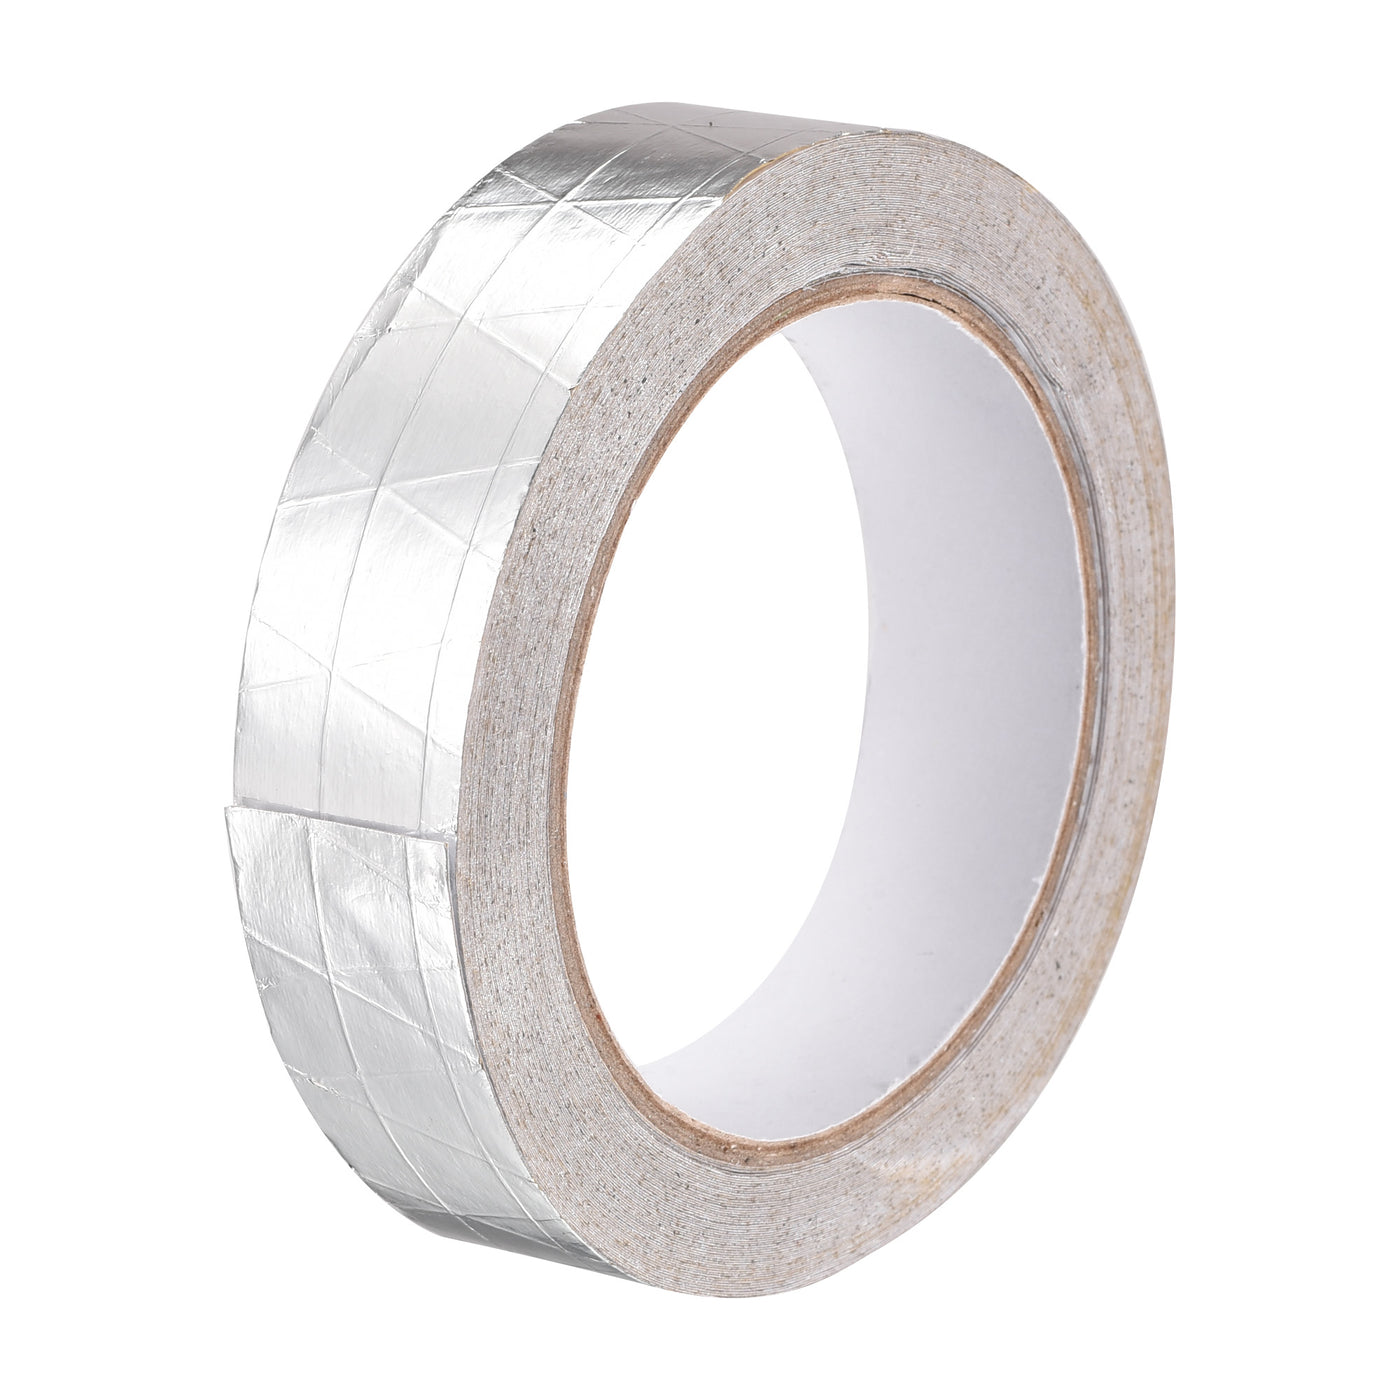 uxcell Uxcell Fiberglass Aluminum Foil Tape High Temperature Tape 25mmx20m/65ft